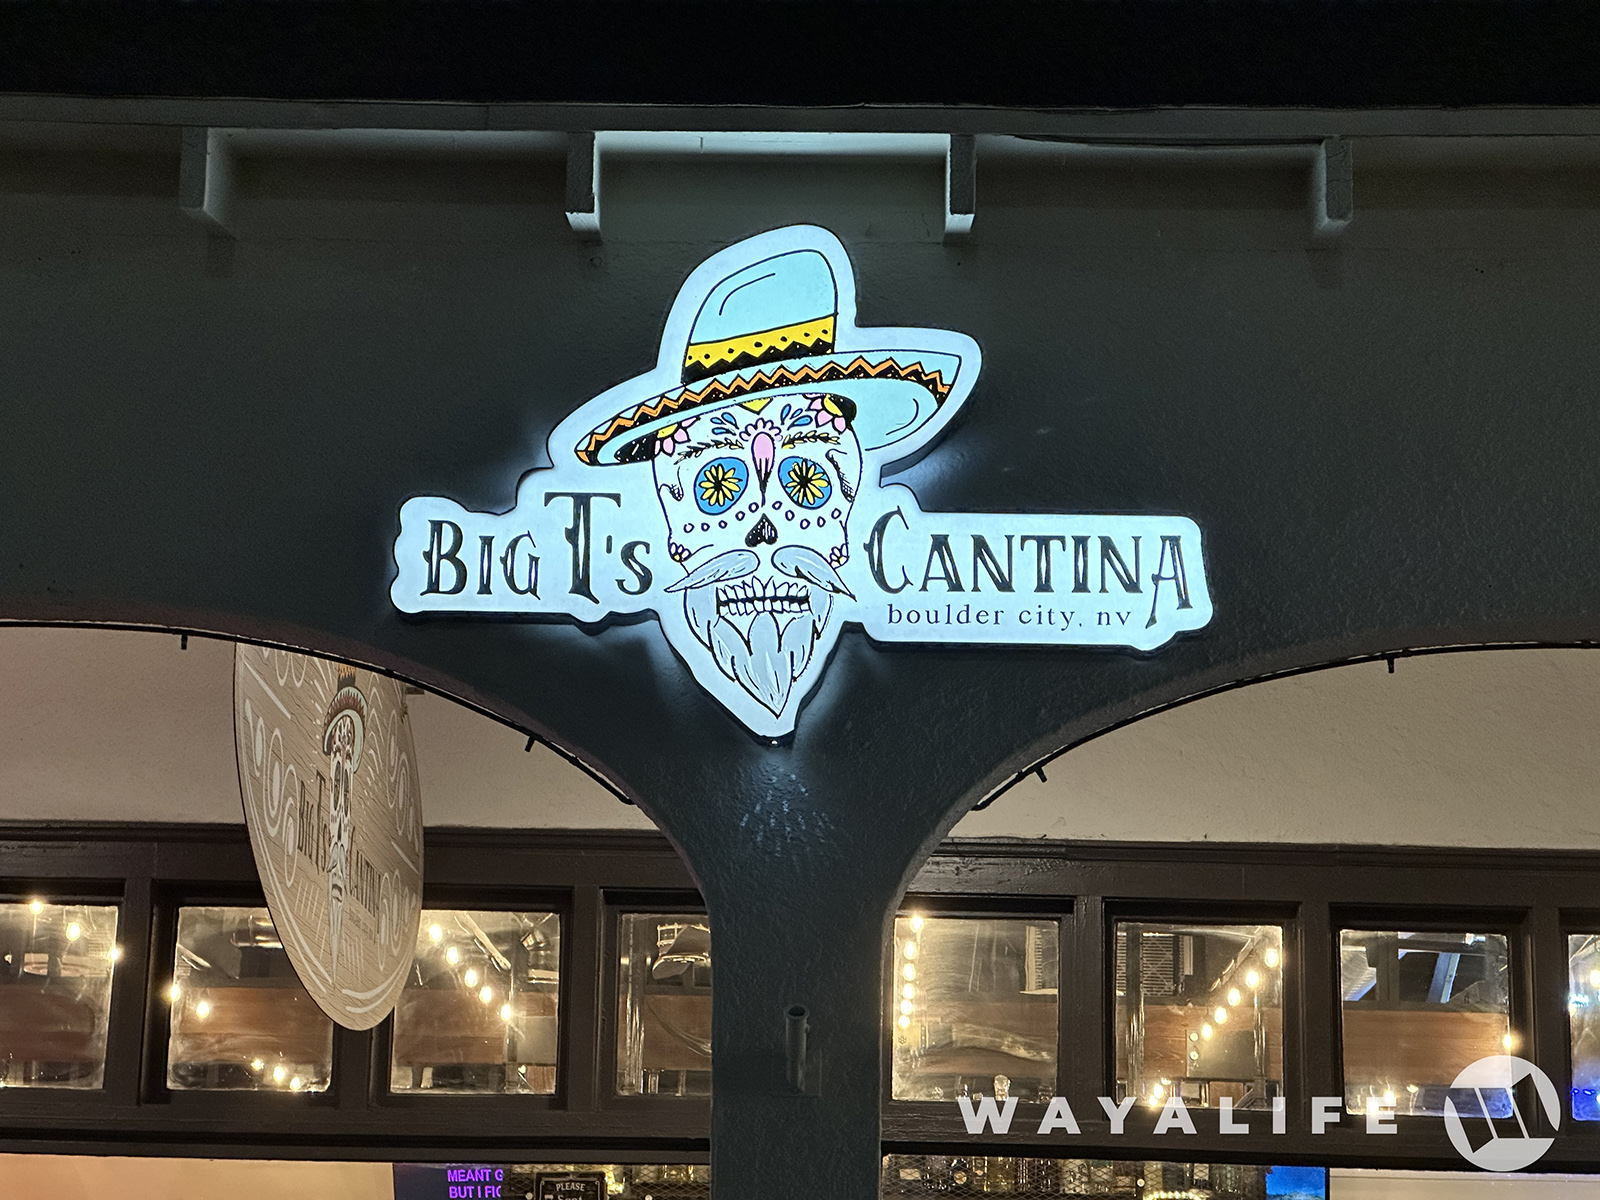 Big T's Cantina